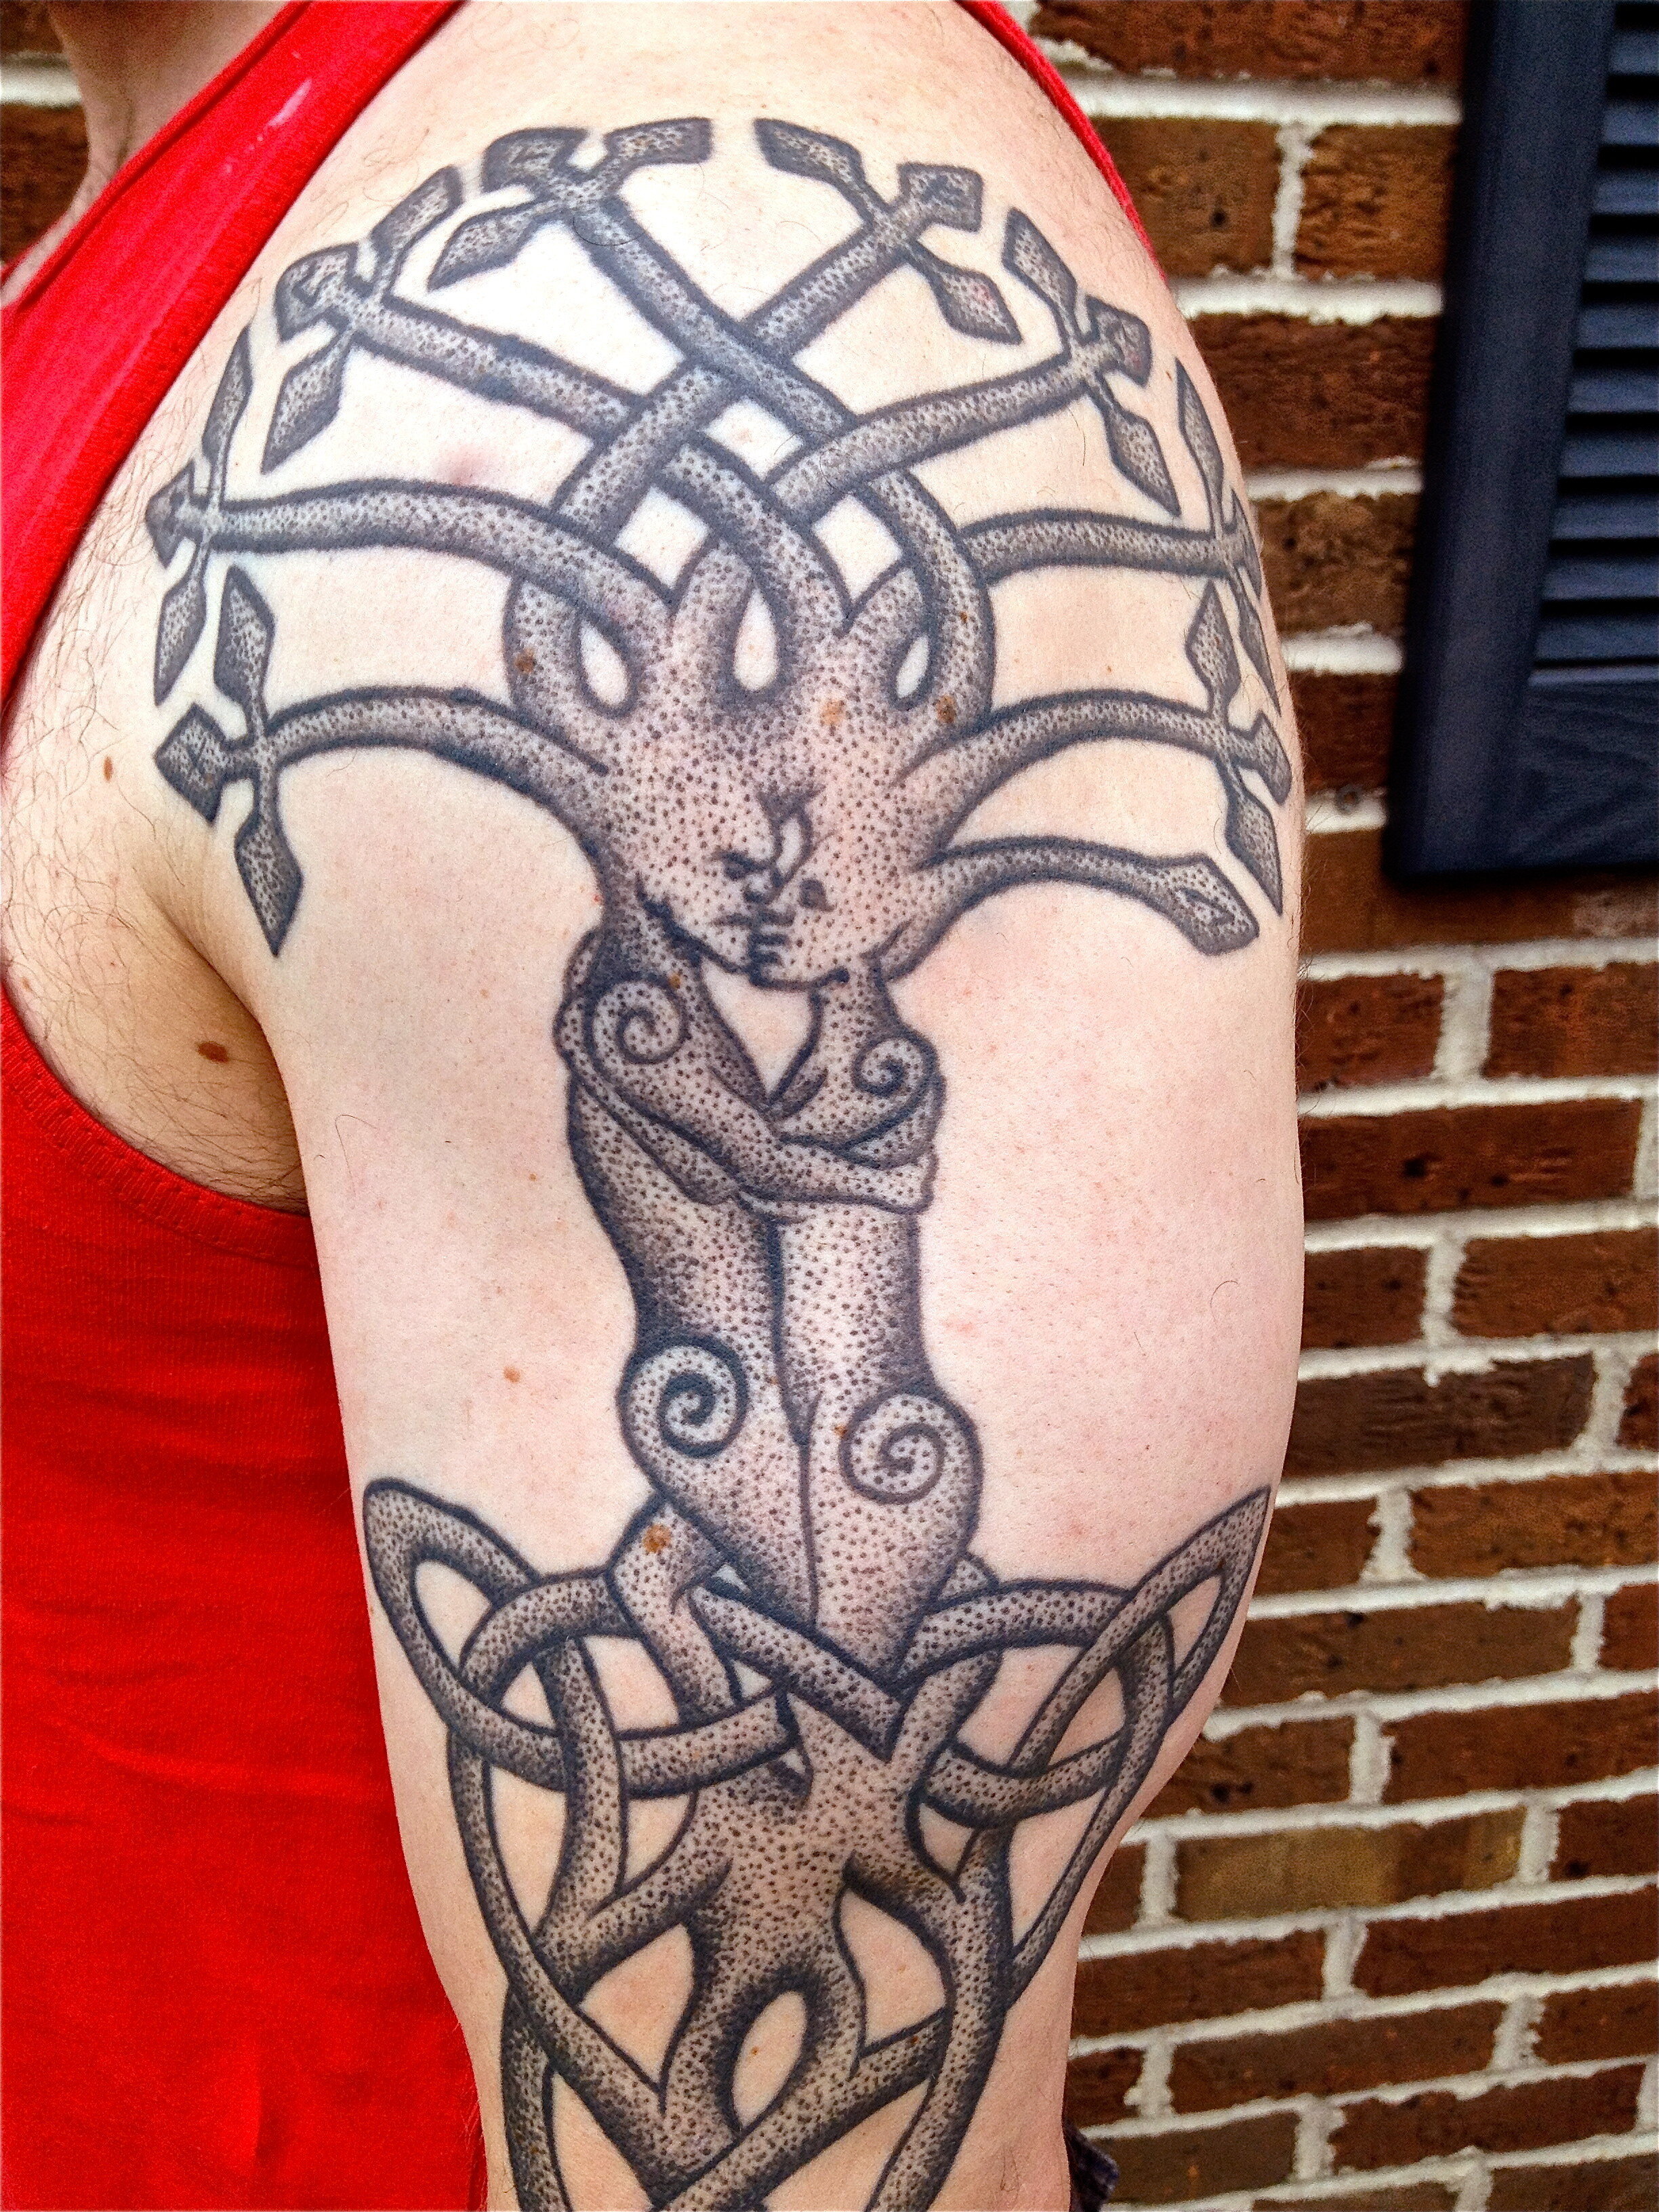 Strange fruit | Rope tattoo, Knot tattoo, Tattoo designs